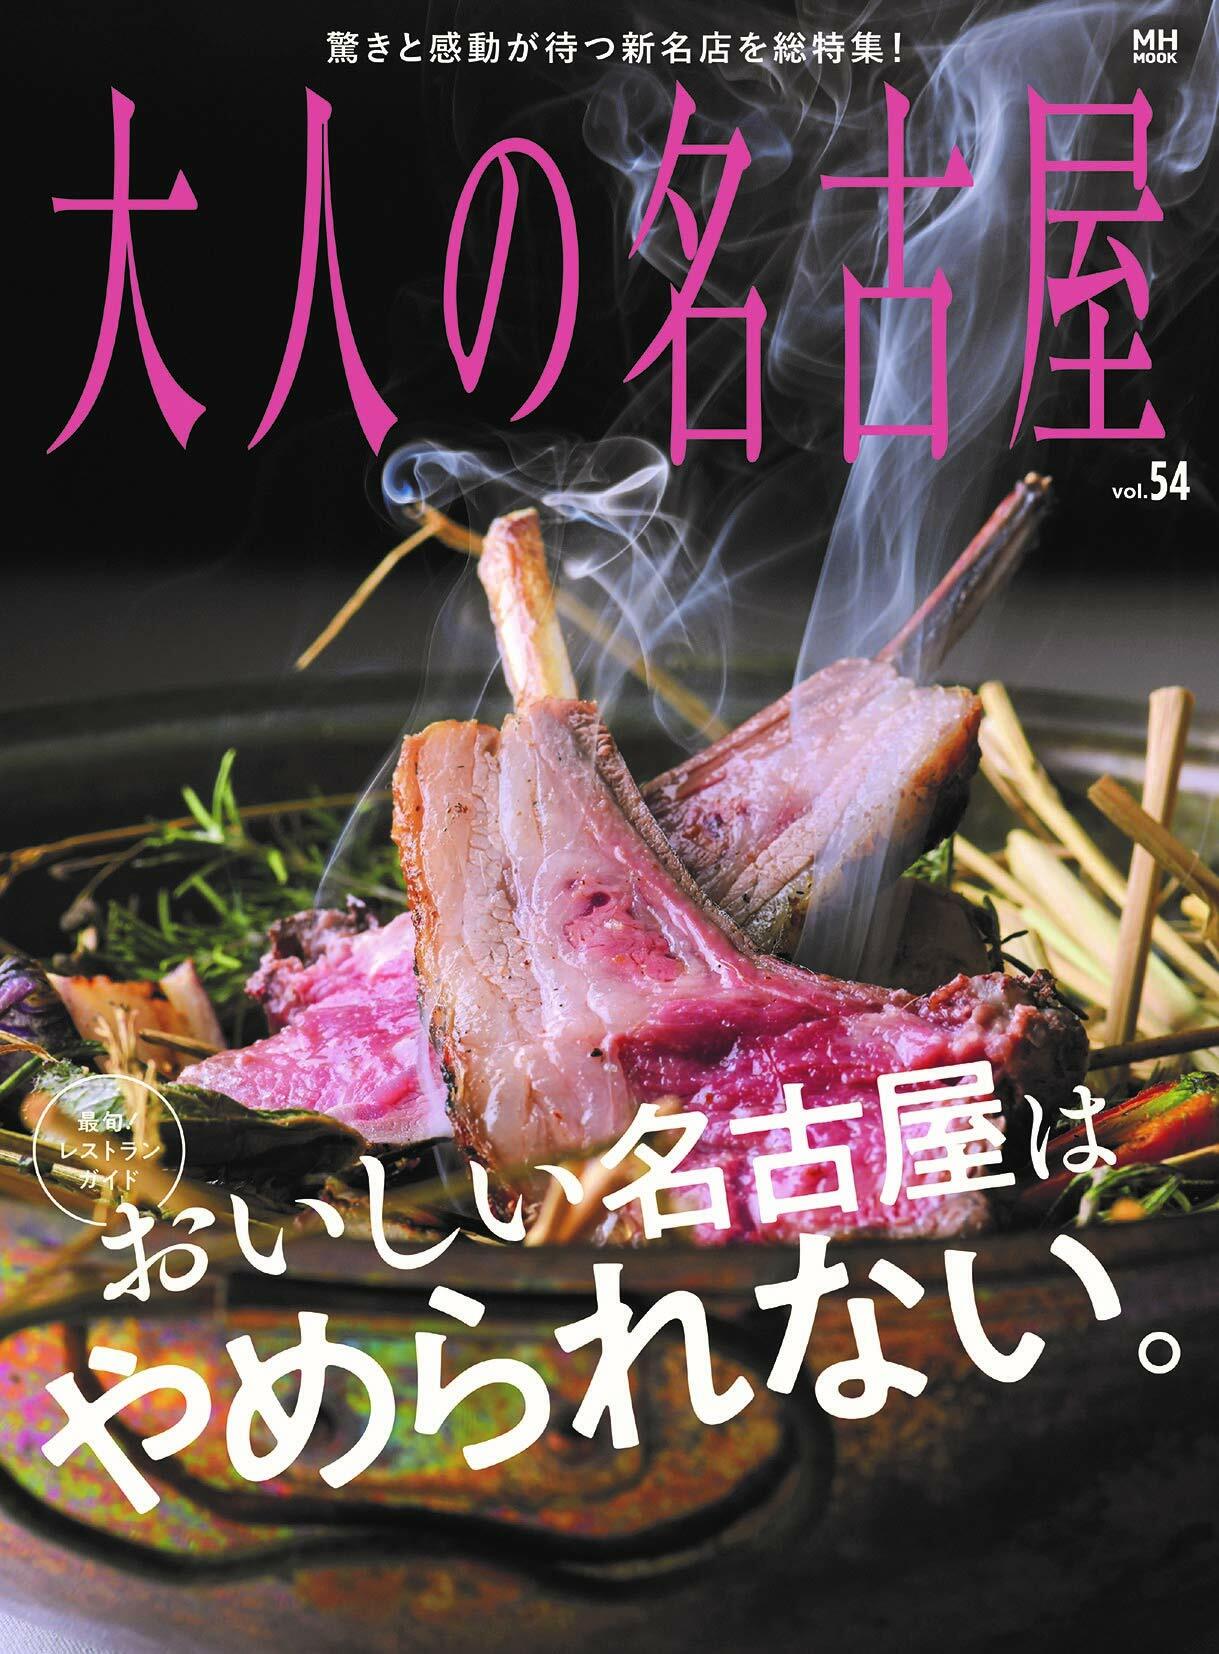 大人の名古屋 Vol.54 [最旬! レストランガイド] おいしい名古屋はやめられない。 (MH-MOOK)